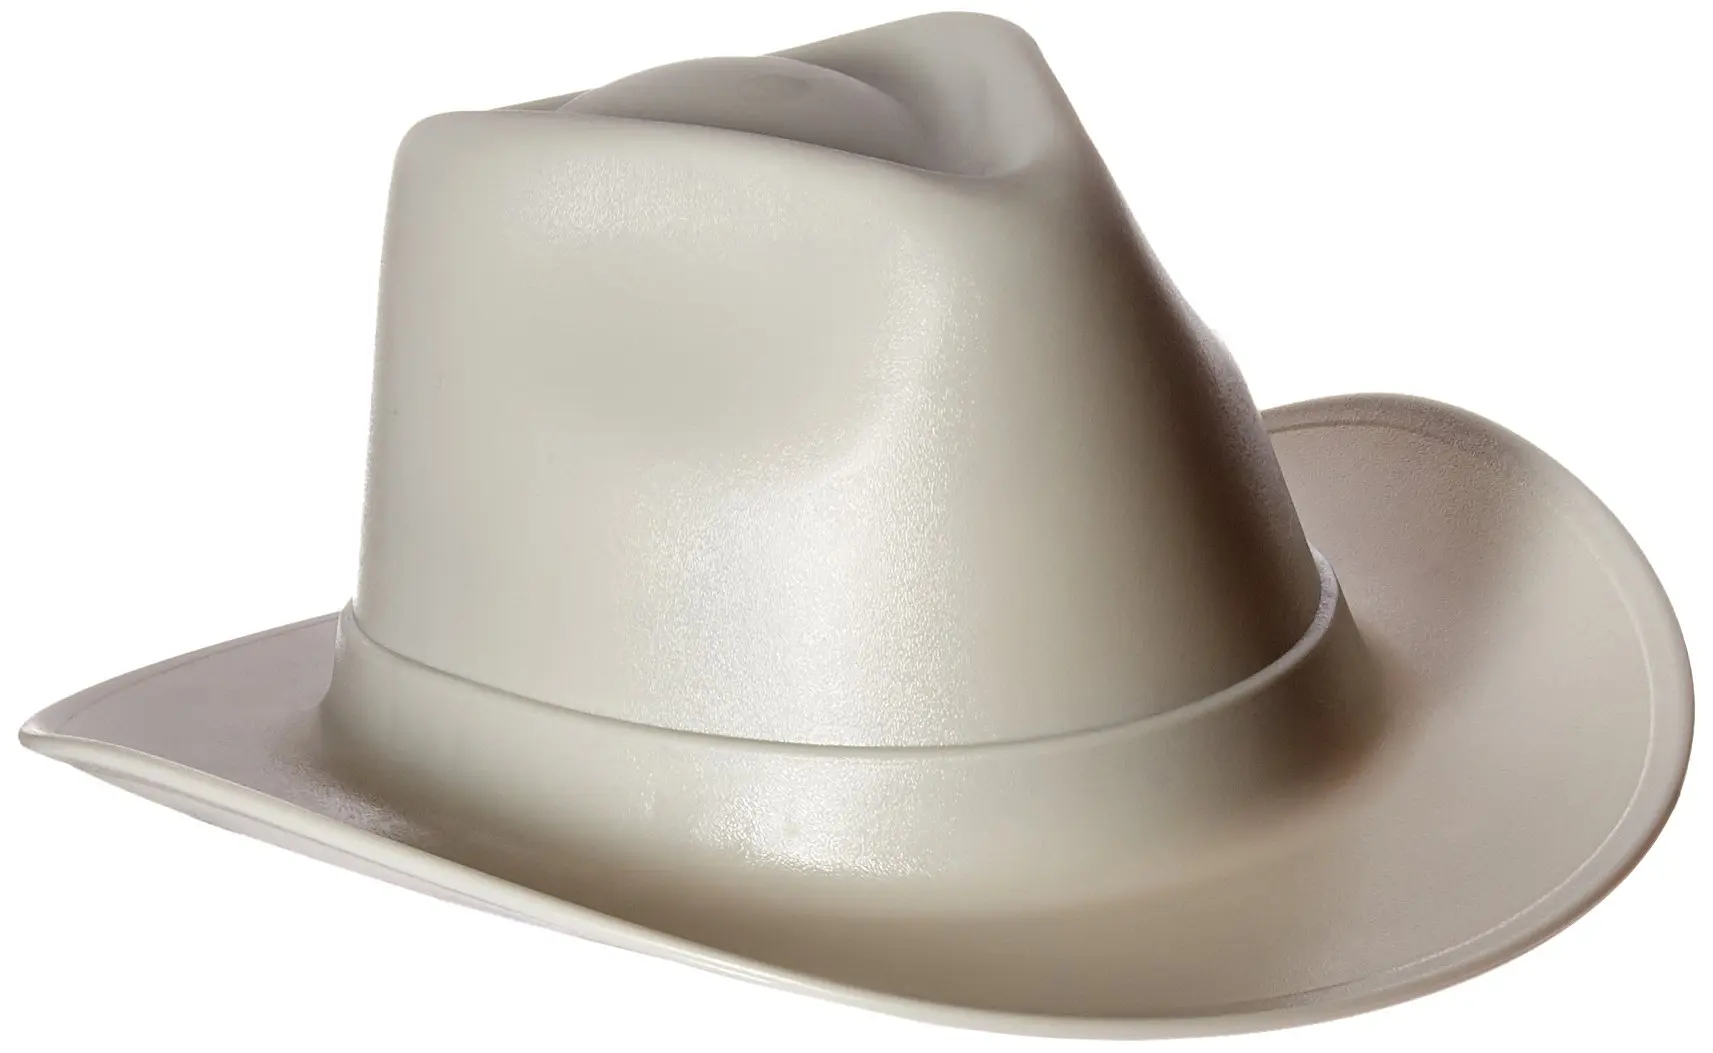 Шляпа пластиковая. Каска защитная ковбойская шляпа. Vulka vcb100-00 hard hat строительная. Ковбойская каска строительная. Каска ковбойская шляпа строительная.